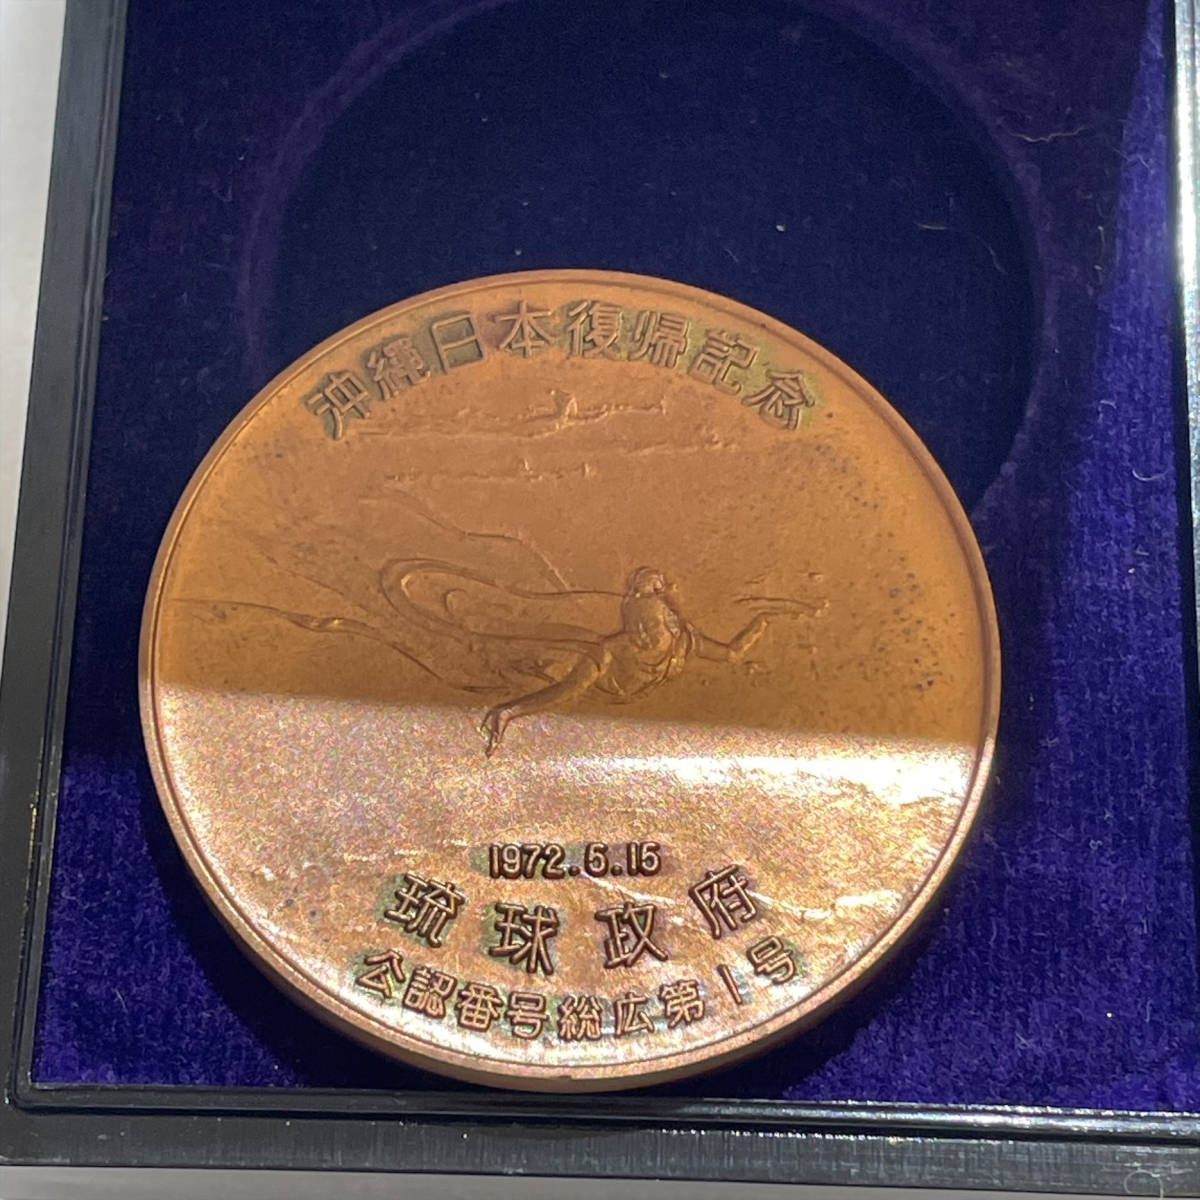 沖縄日本復帰記念メダル琉球政府公認銅製メダル保管品| JChere雅虎拍卖代购